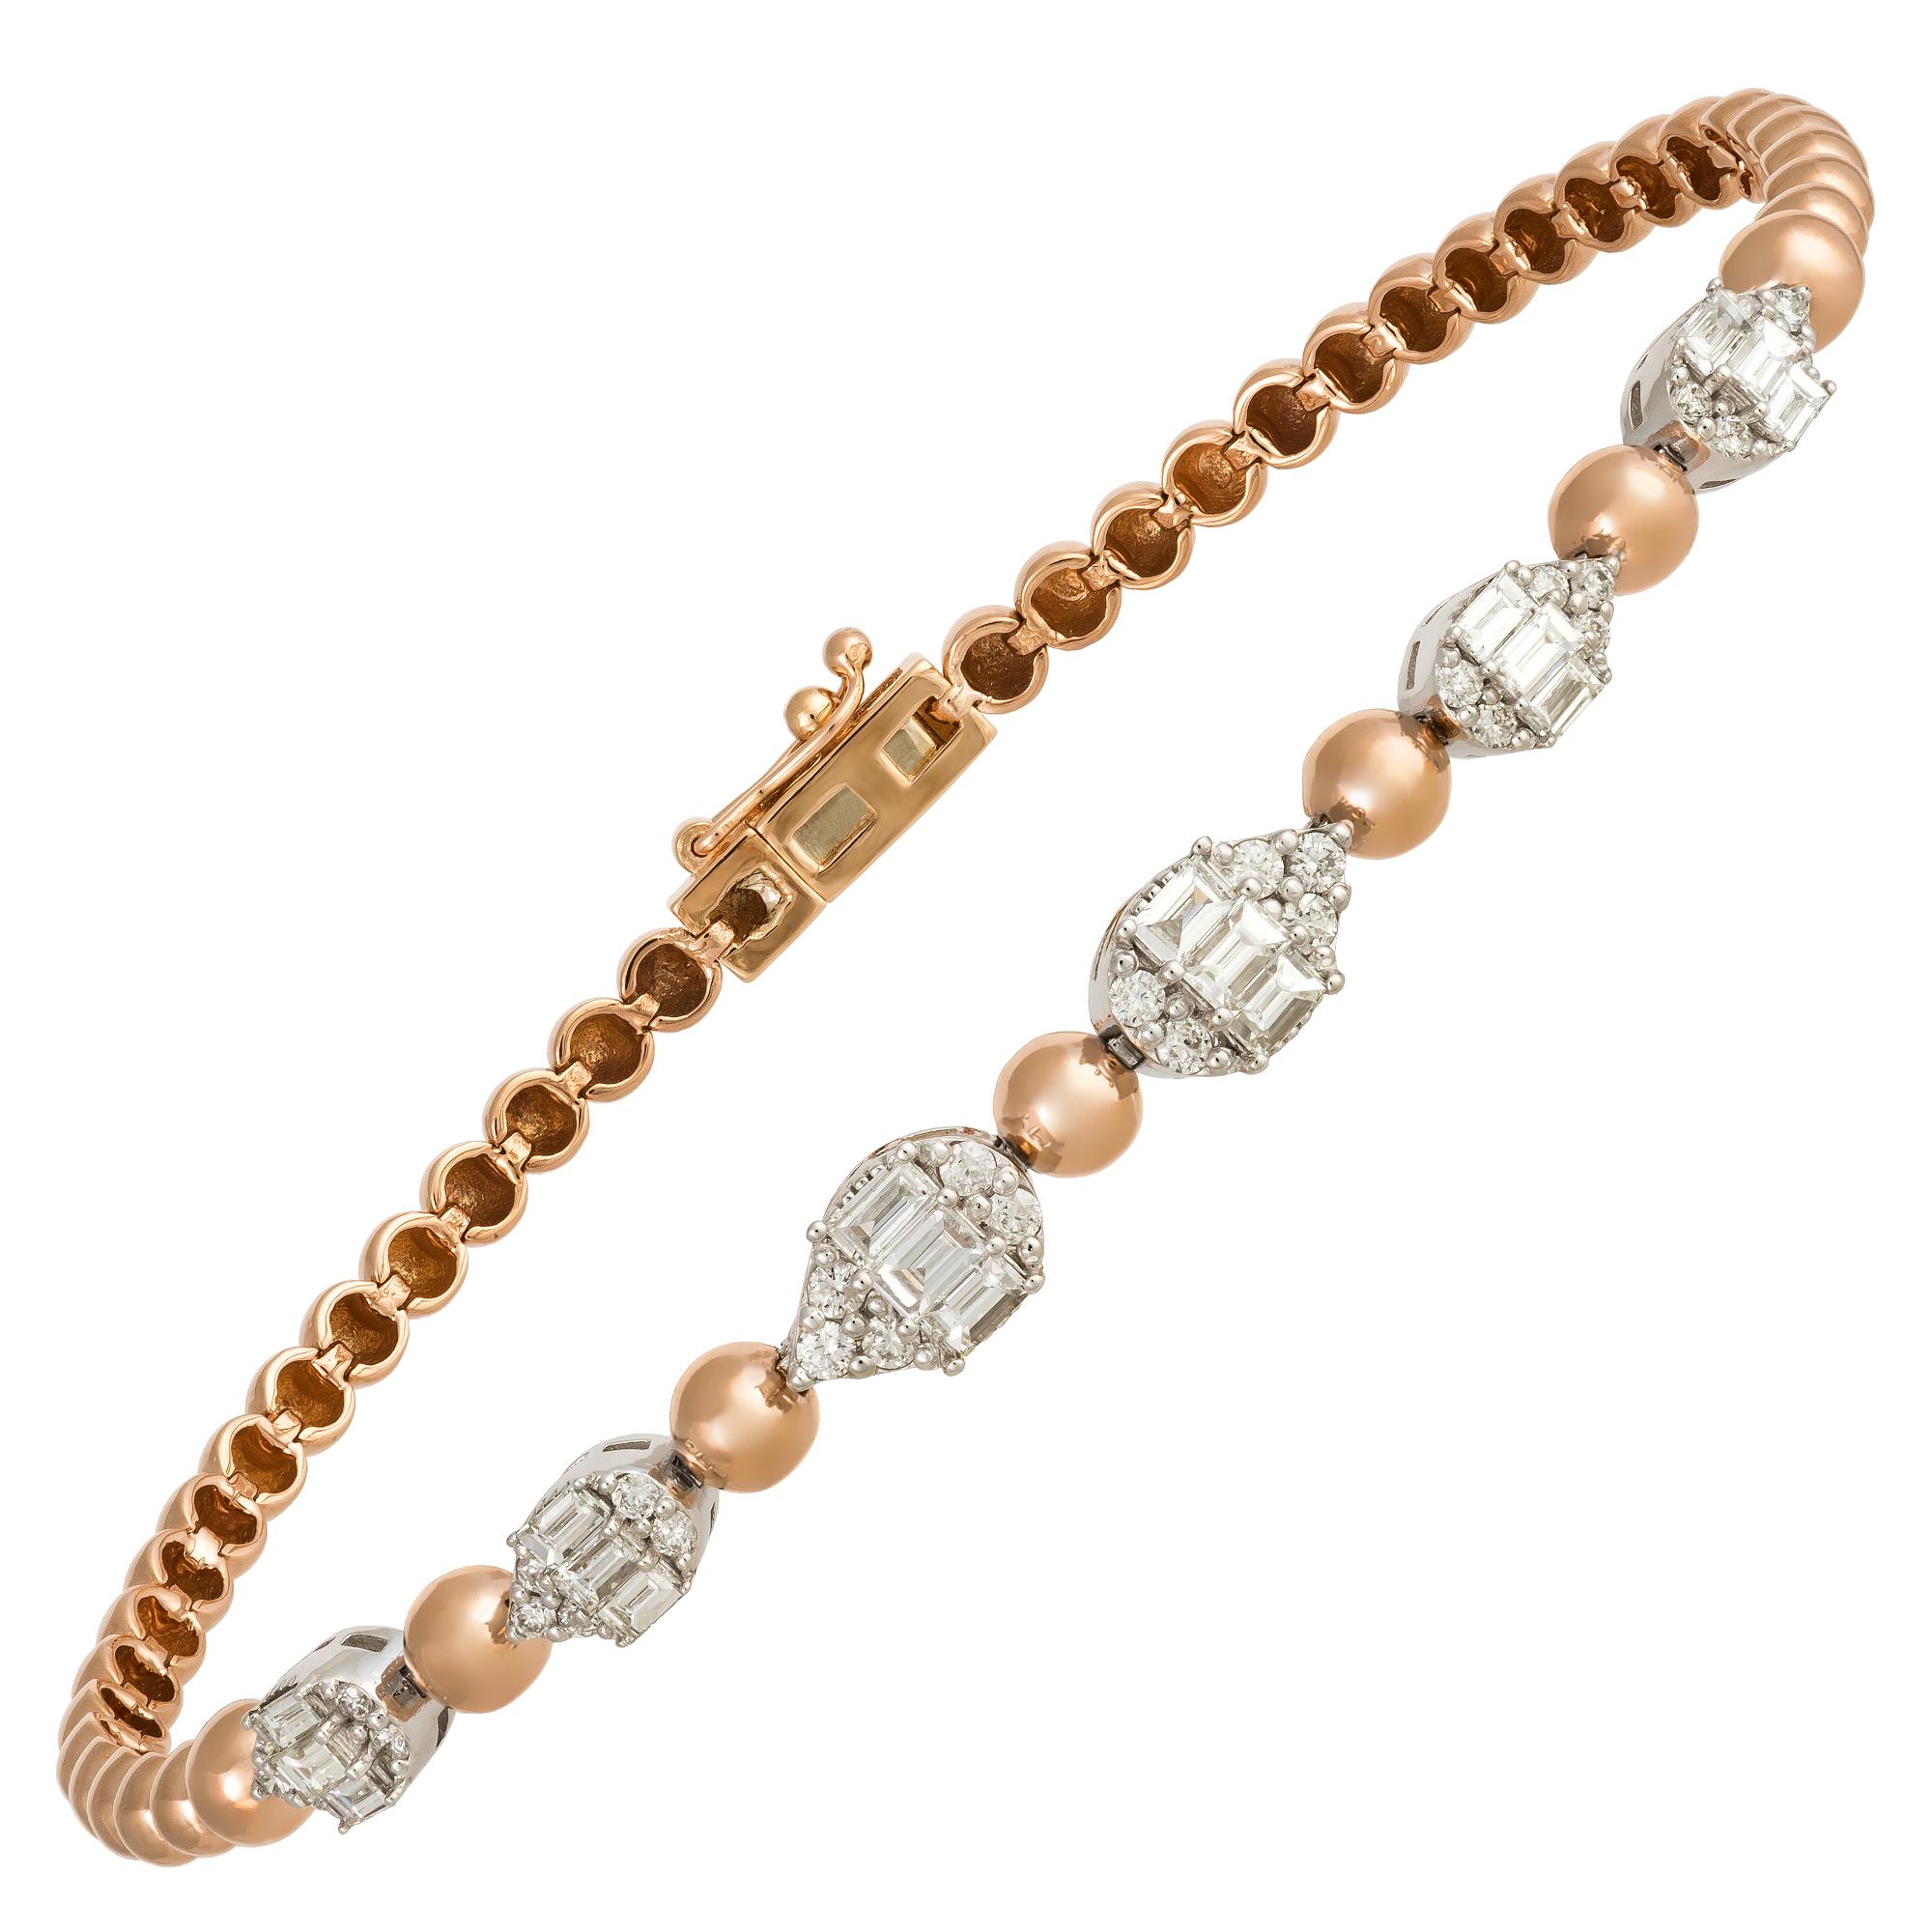 Modern Classic White Pink Gold 18K Bracelet Diamond for Her For Sale